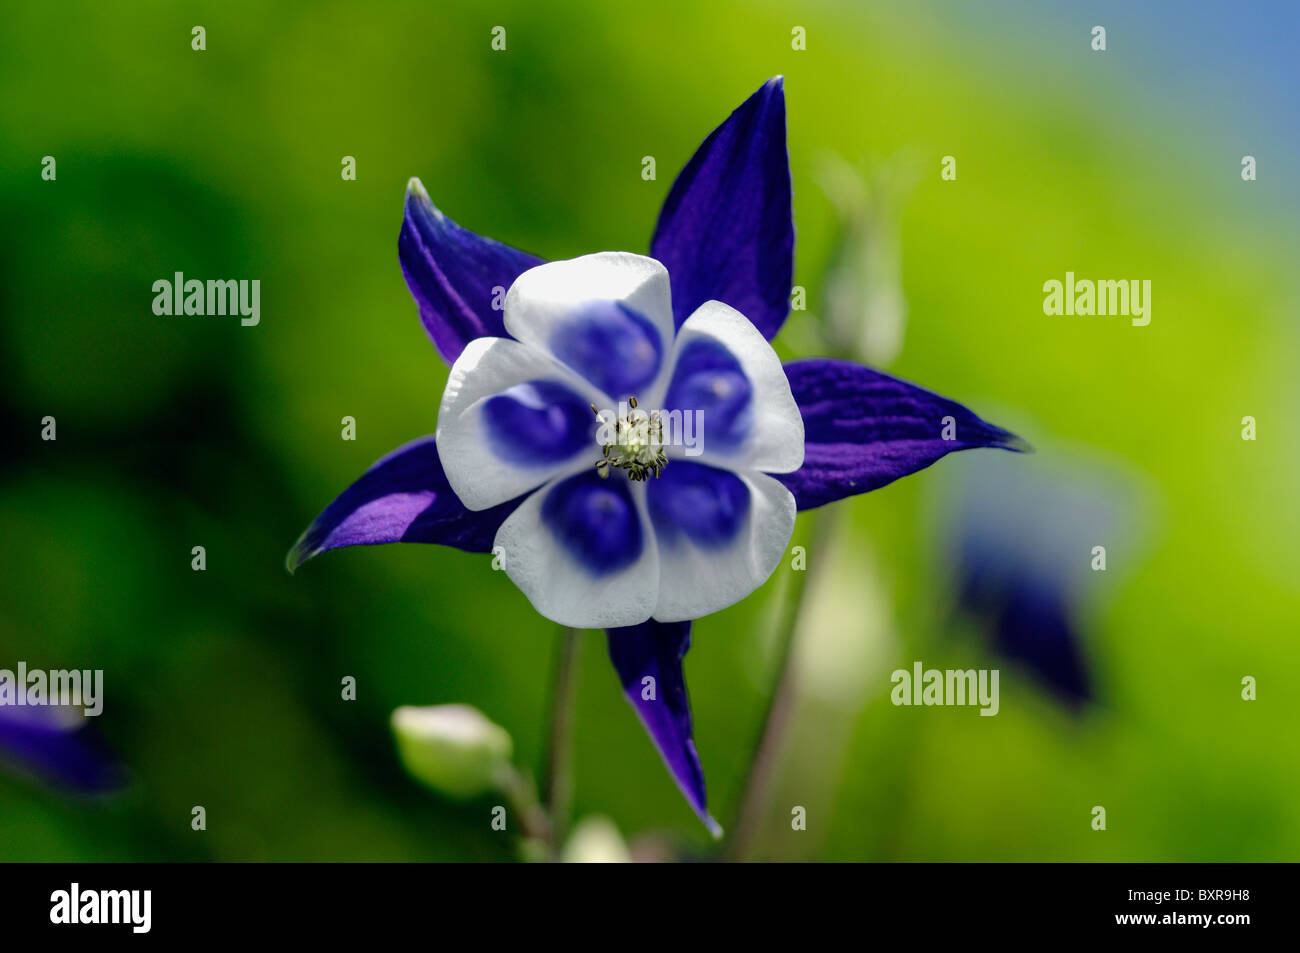 Close up of Aquilegia flower Stock Photo